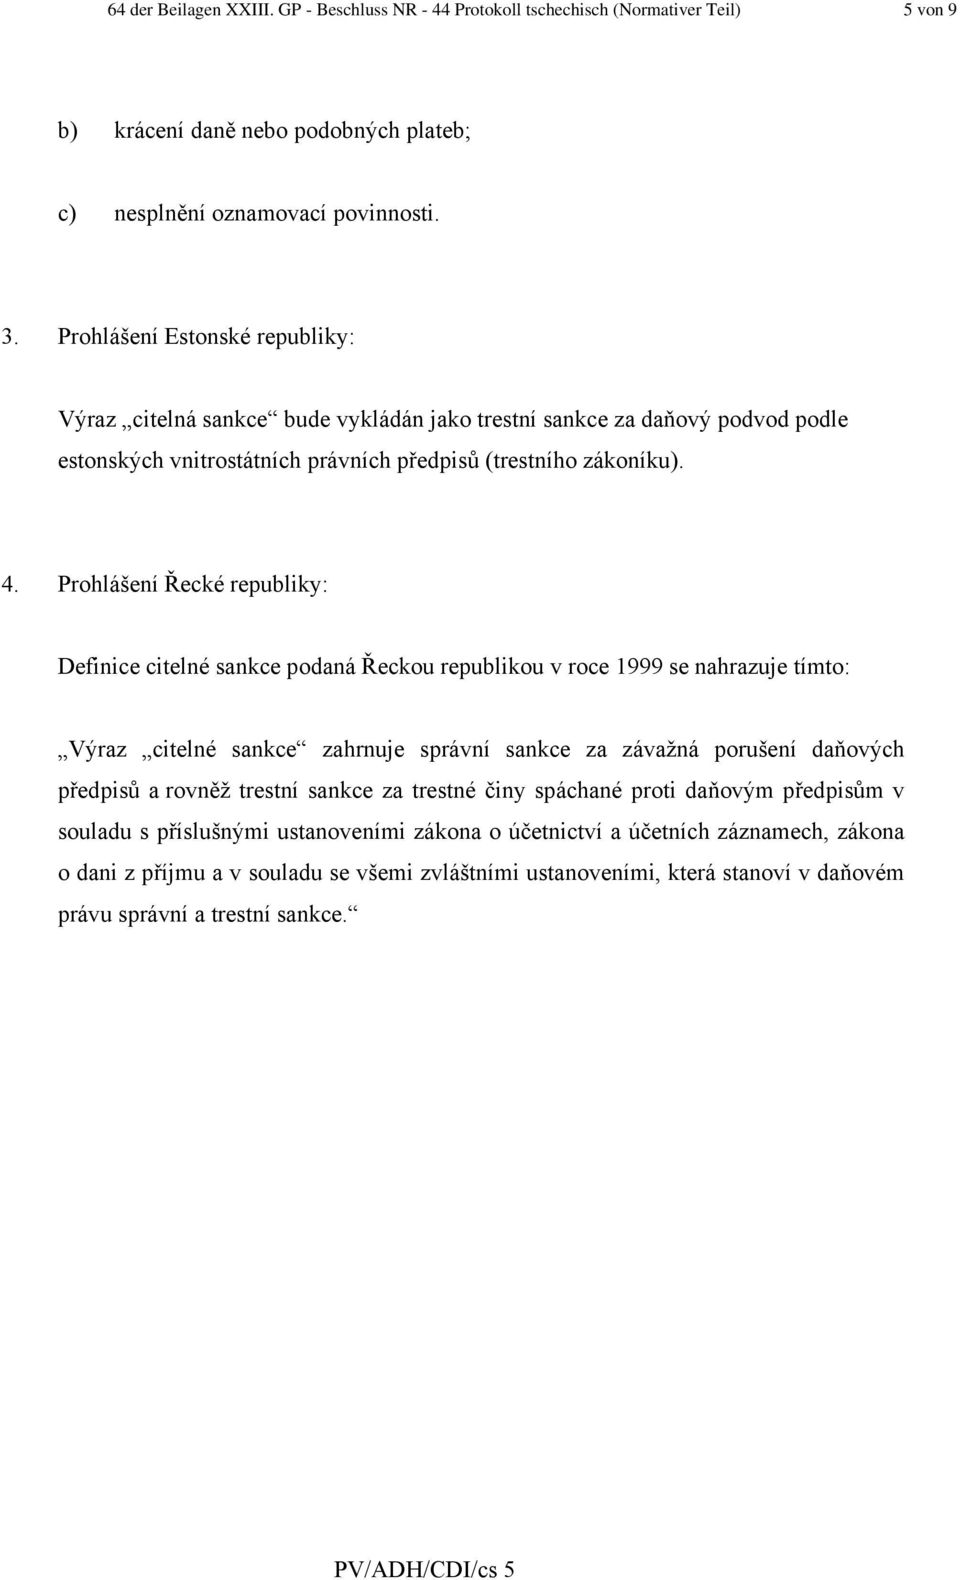 Prohlášení Řecké republiky: Definice citelné sankce podaná Řeckou republikou v roce 1999 se nahrazuje tímto: Výraz citelné sankce zahrnuje správní sankce za závažná porušení daňových předpisů a